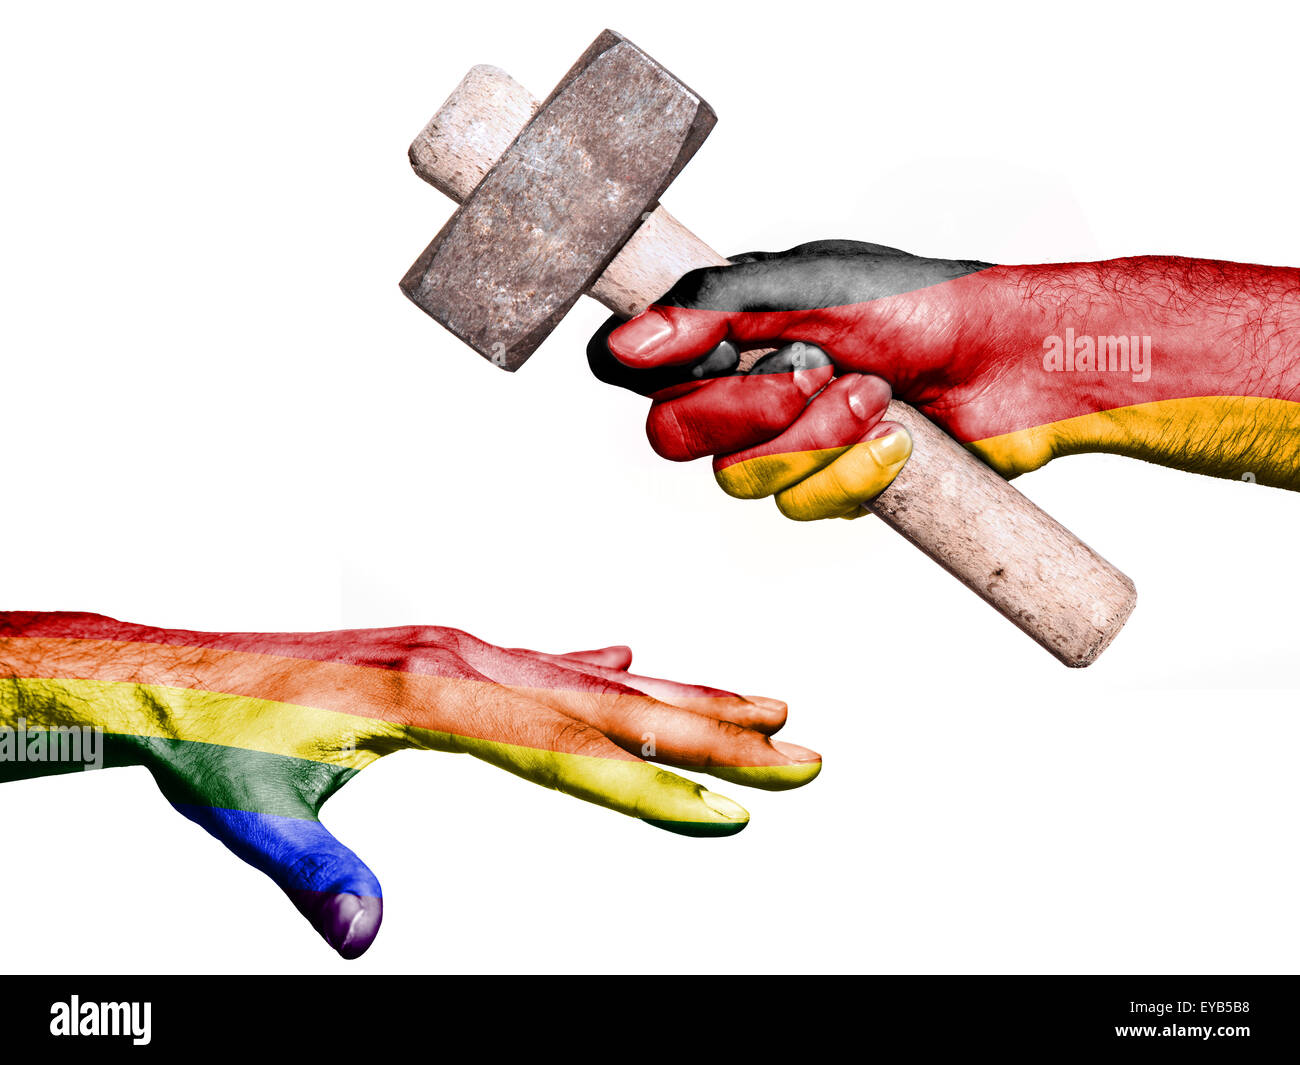 Pabellón de Alemania sobreimpresos en una mano que sostiene un martillo pesado golpea una mano que representa la paz. Imagen conceptual para la política Foto de stock